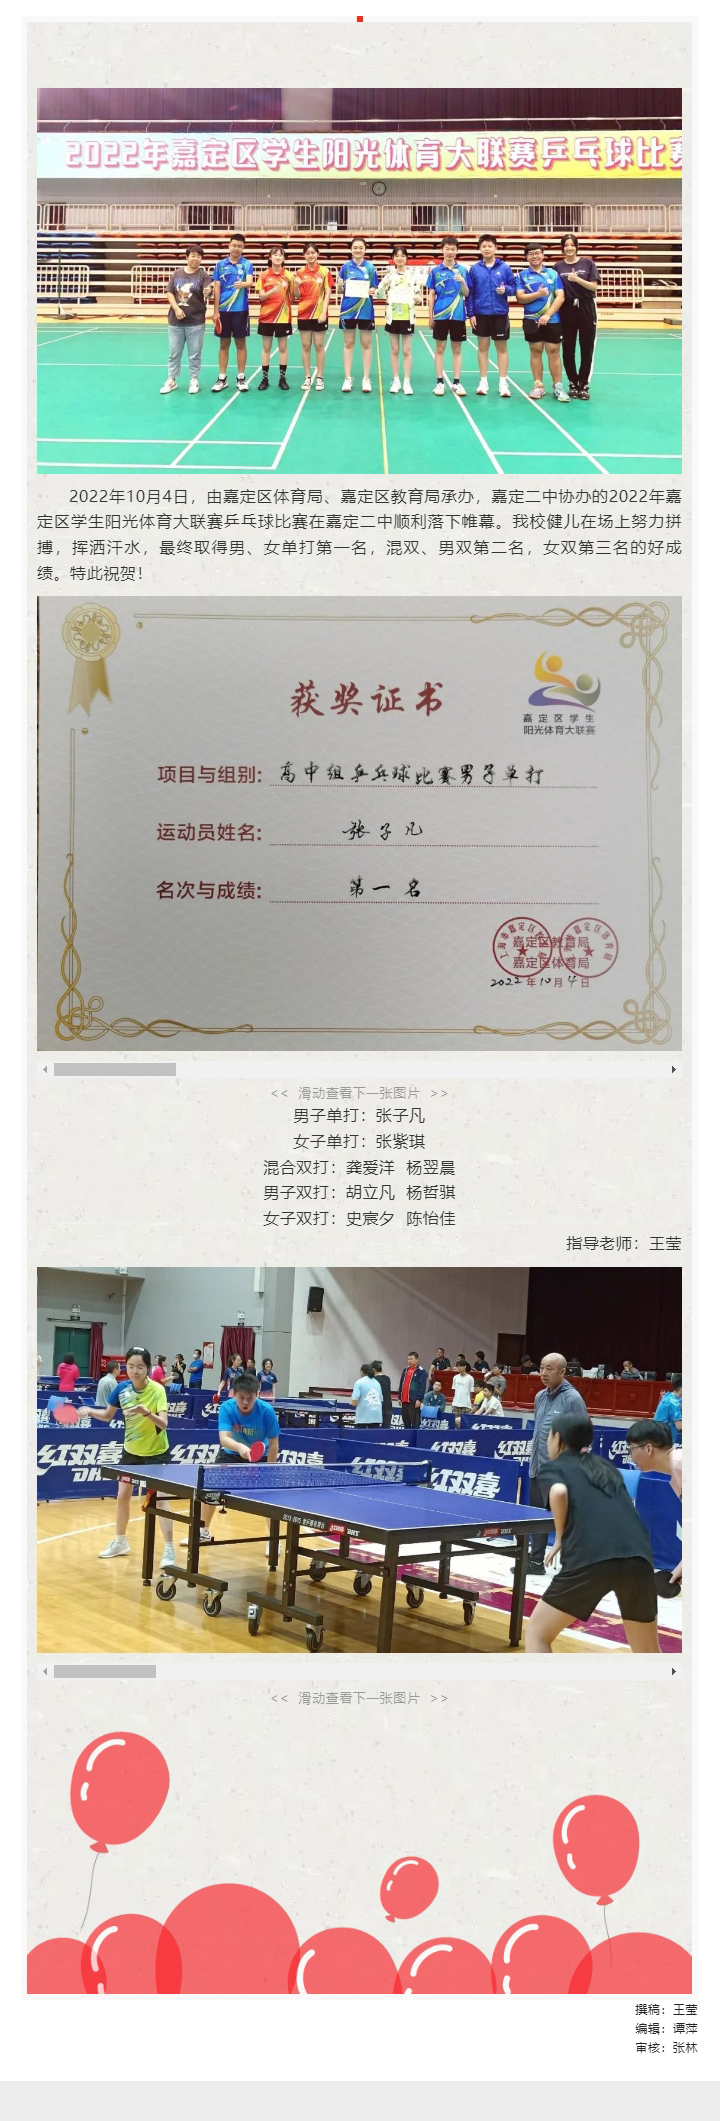 我校同学在2022年嘉定区学生阳光体育大联赛乒乓球比赛中取得佳绩_202210248425.jpg